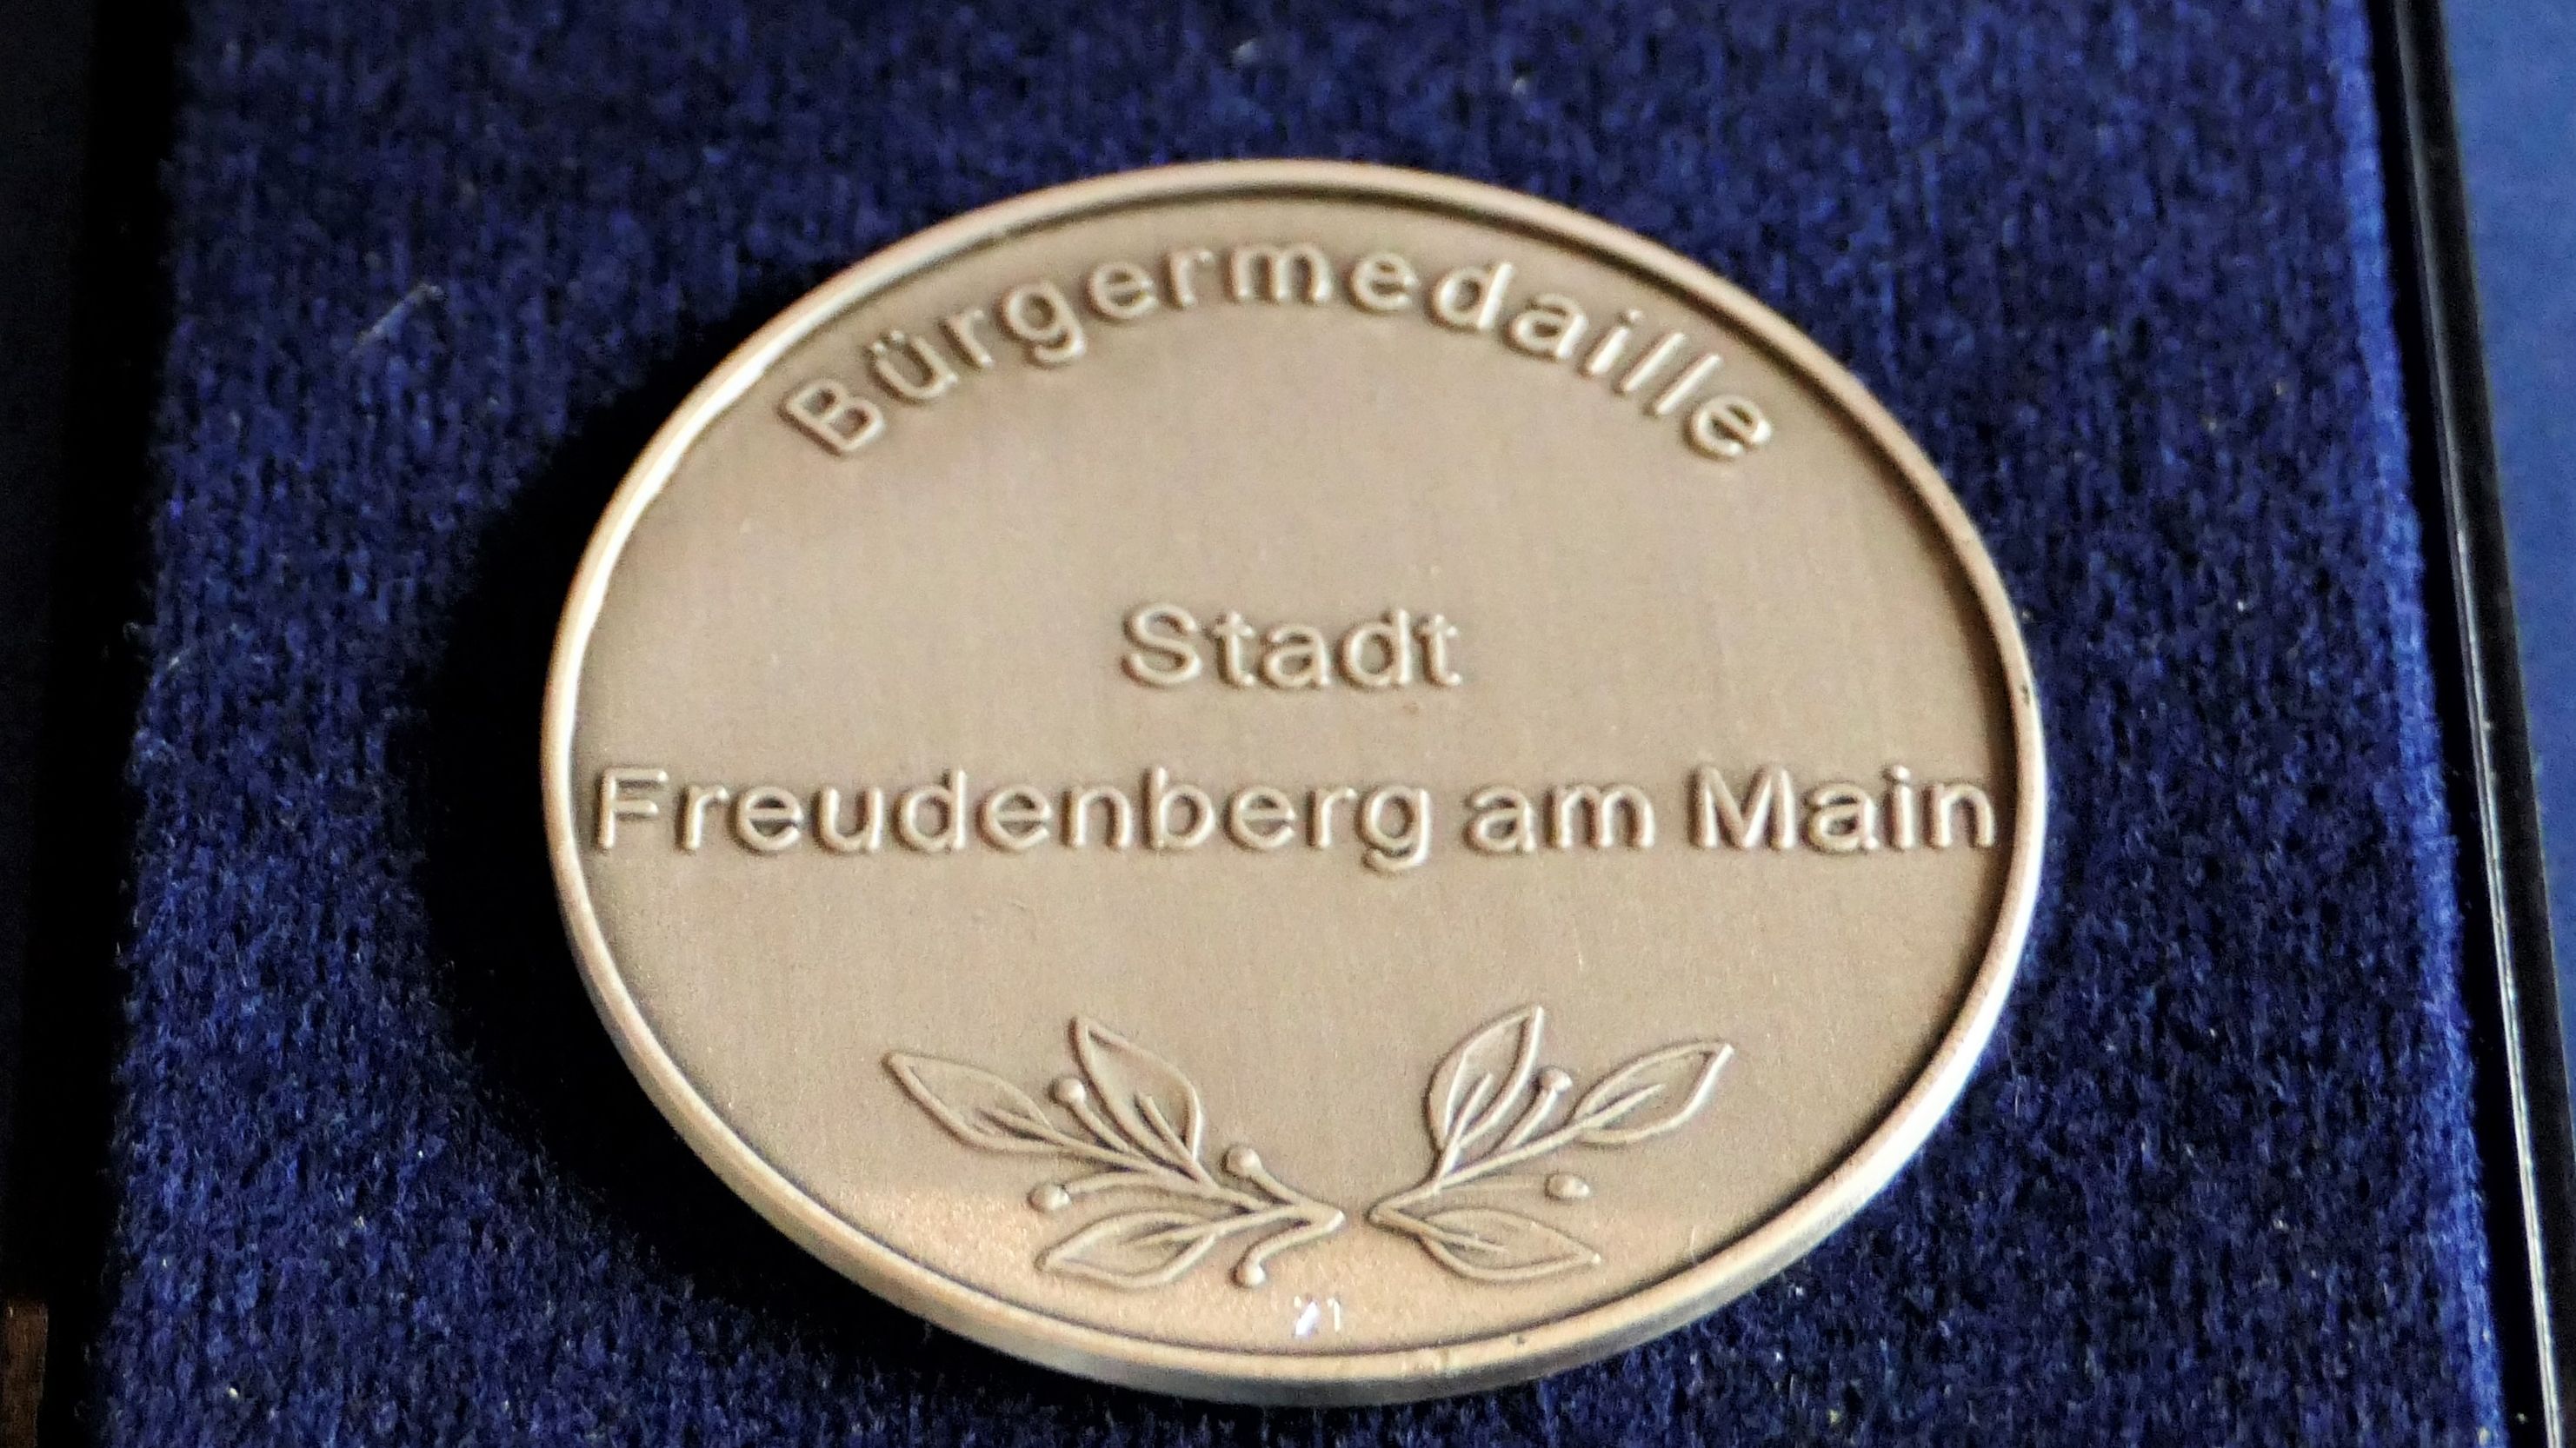  Bürgermedaille - copyr. M. Zängerlein 